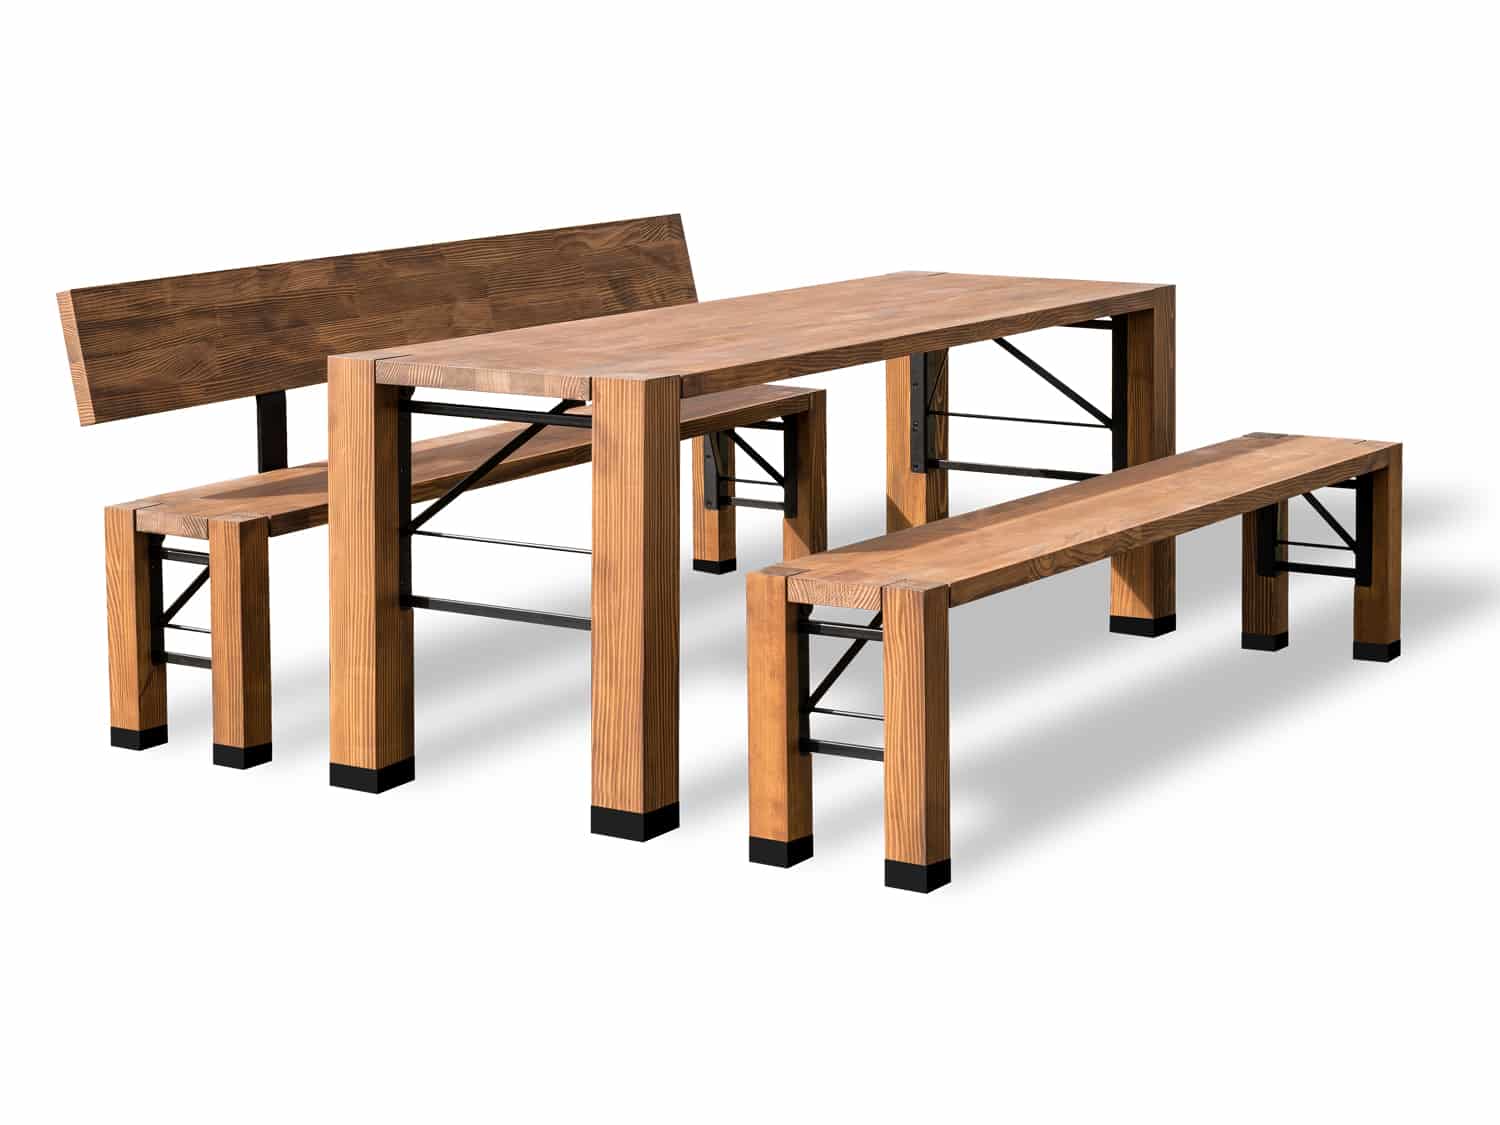 Die Designgarnitur Lago bestehend aus Tisch, Bank mit Lehne und Bank ohne Lehne.